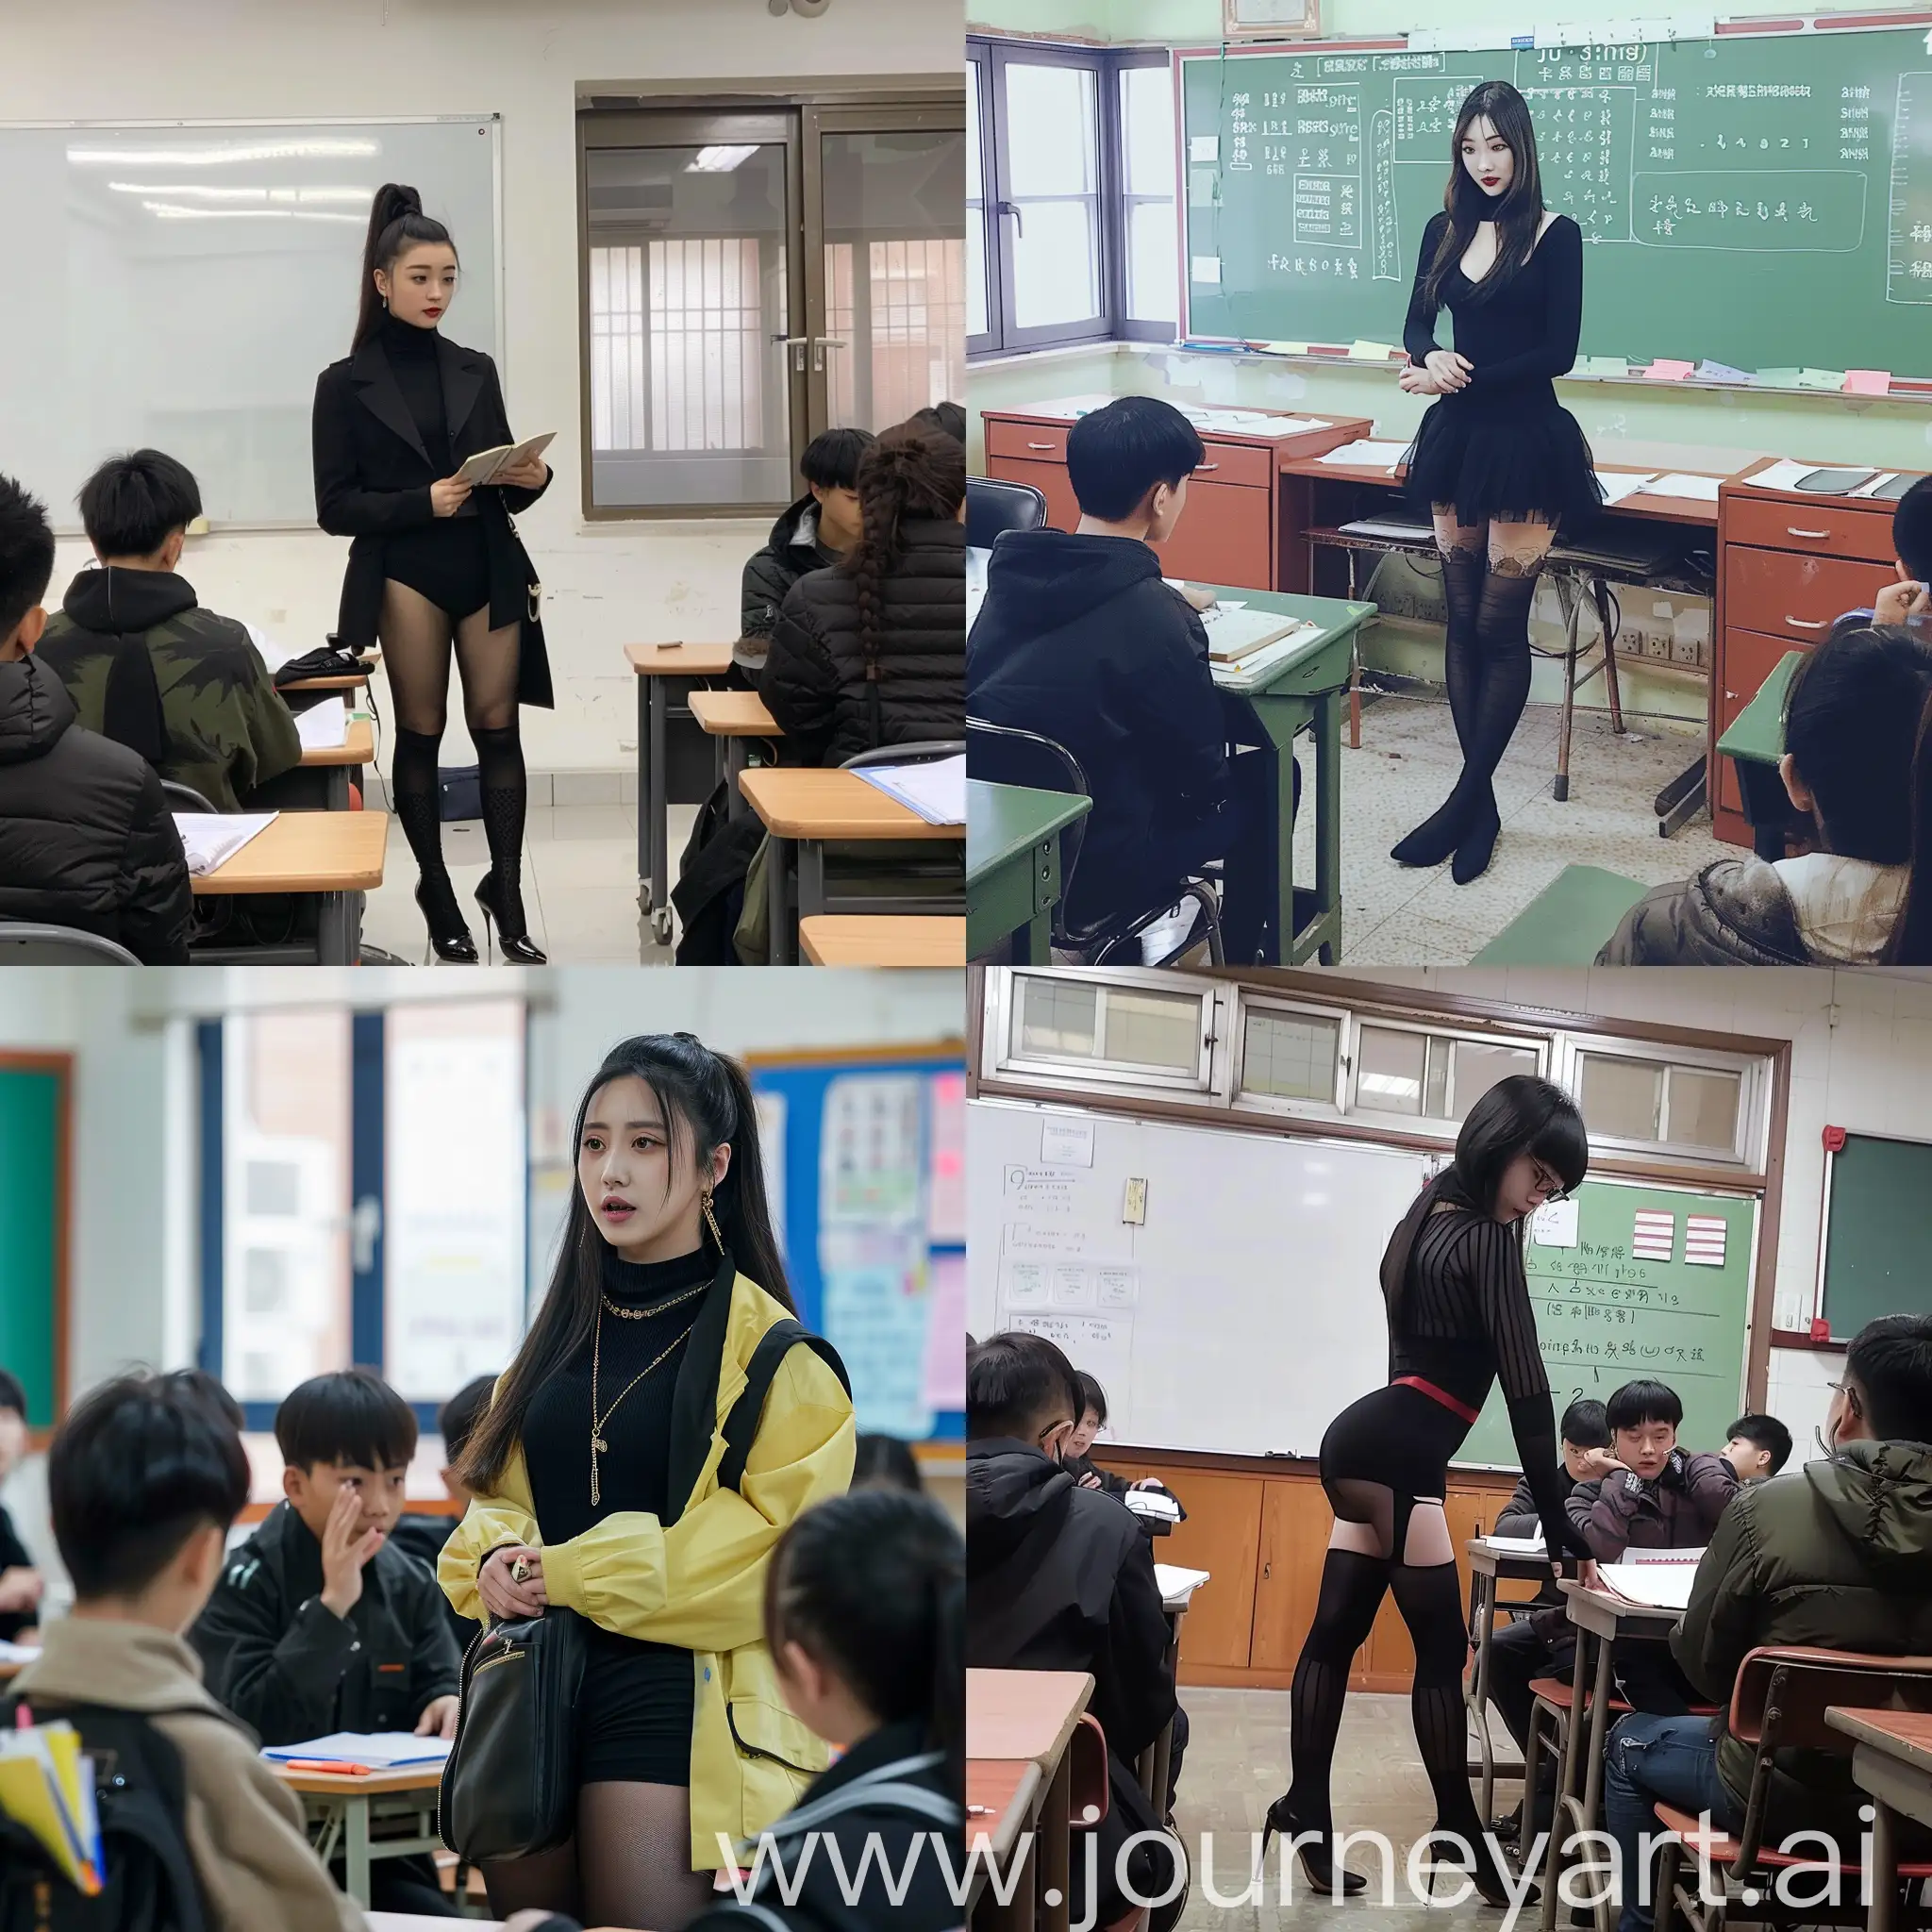 鞠婧祎穿黑丝职业装在教室里教学生